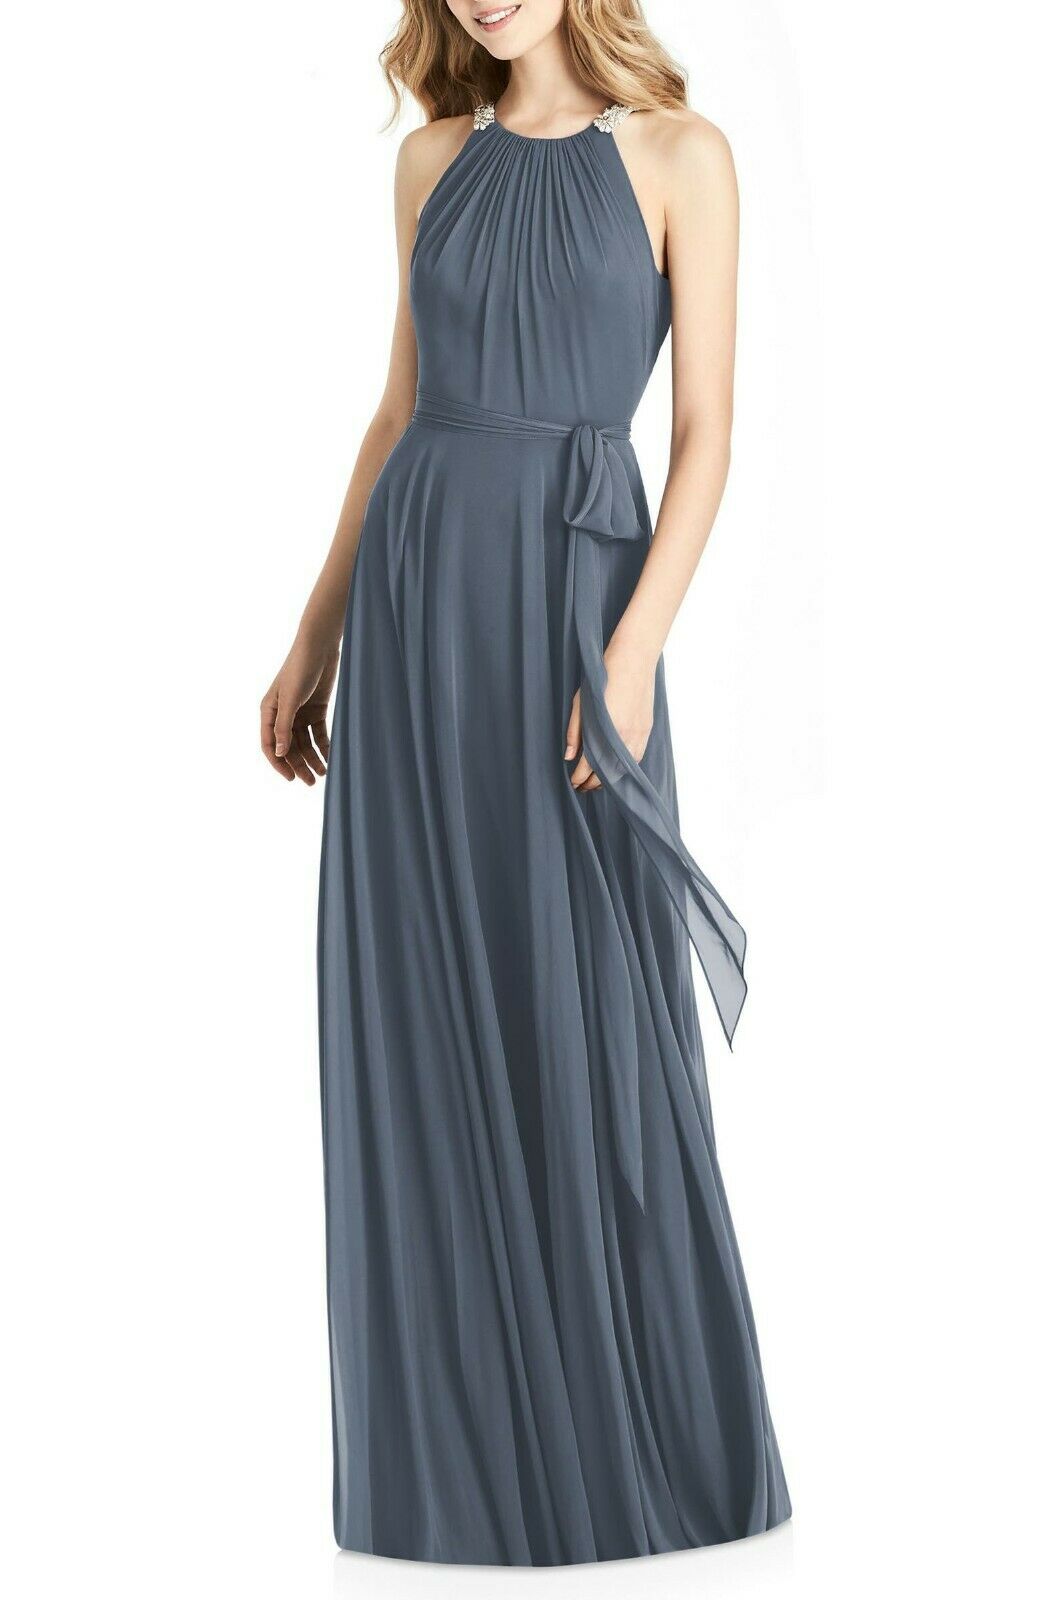 Jenny Packham Crystal Strap HLTR Neck Chiffon A-Line Gown Size 12